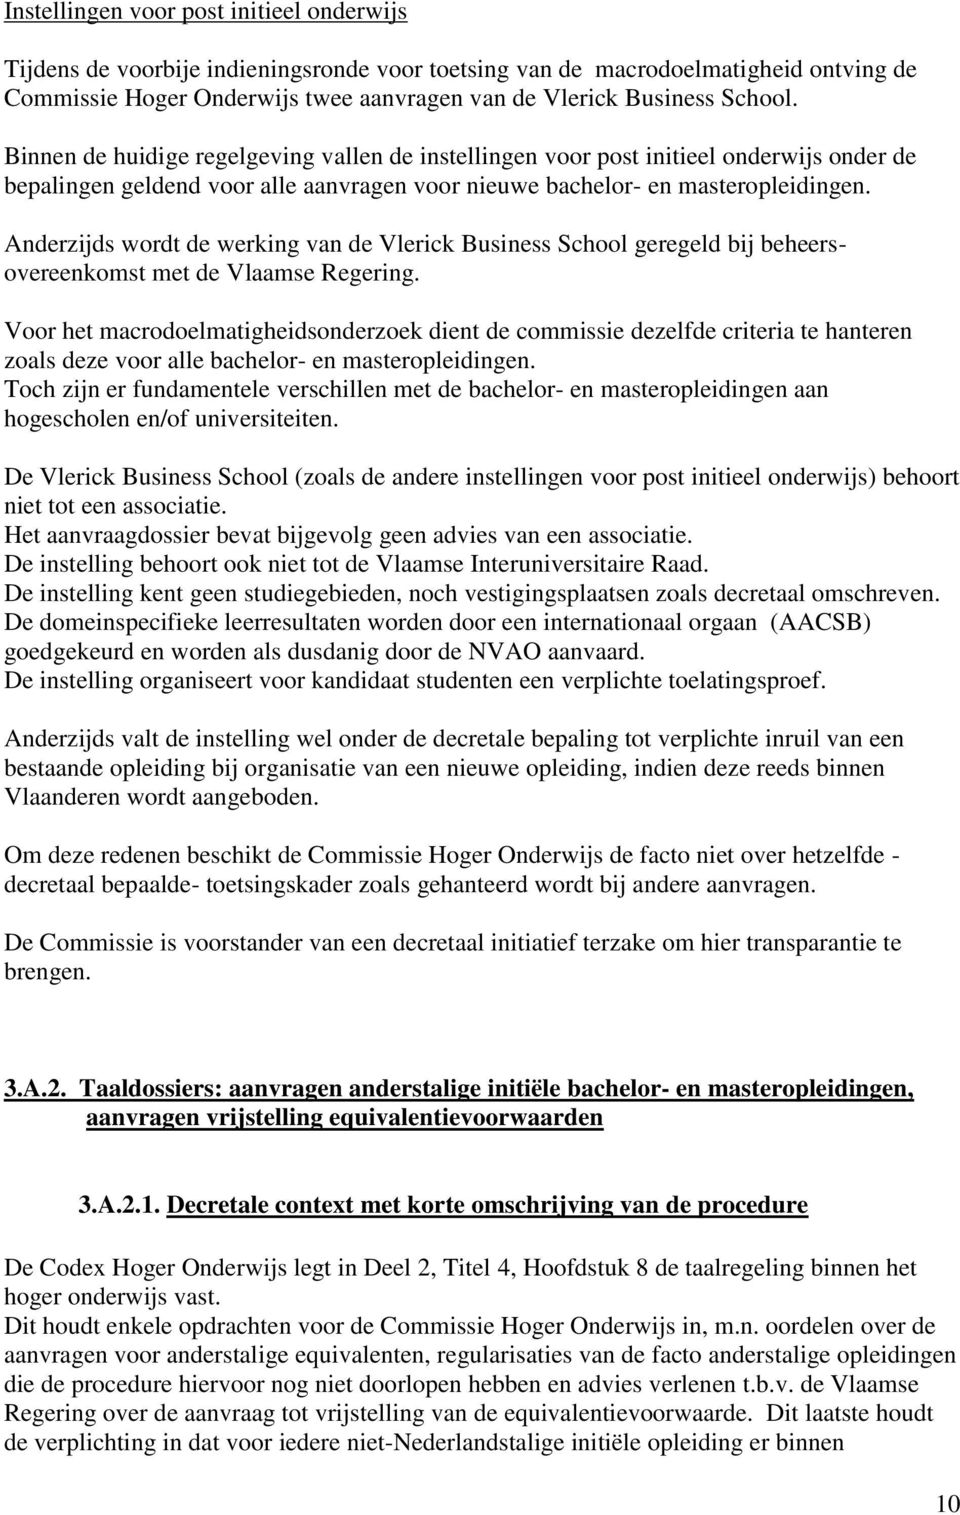 Anderzijds wordt de werking van de Vlerick Business School geregeld bij beheersovereenkomst met de Vlaamse Regering.